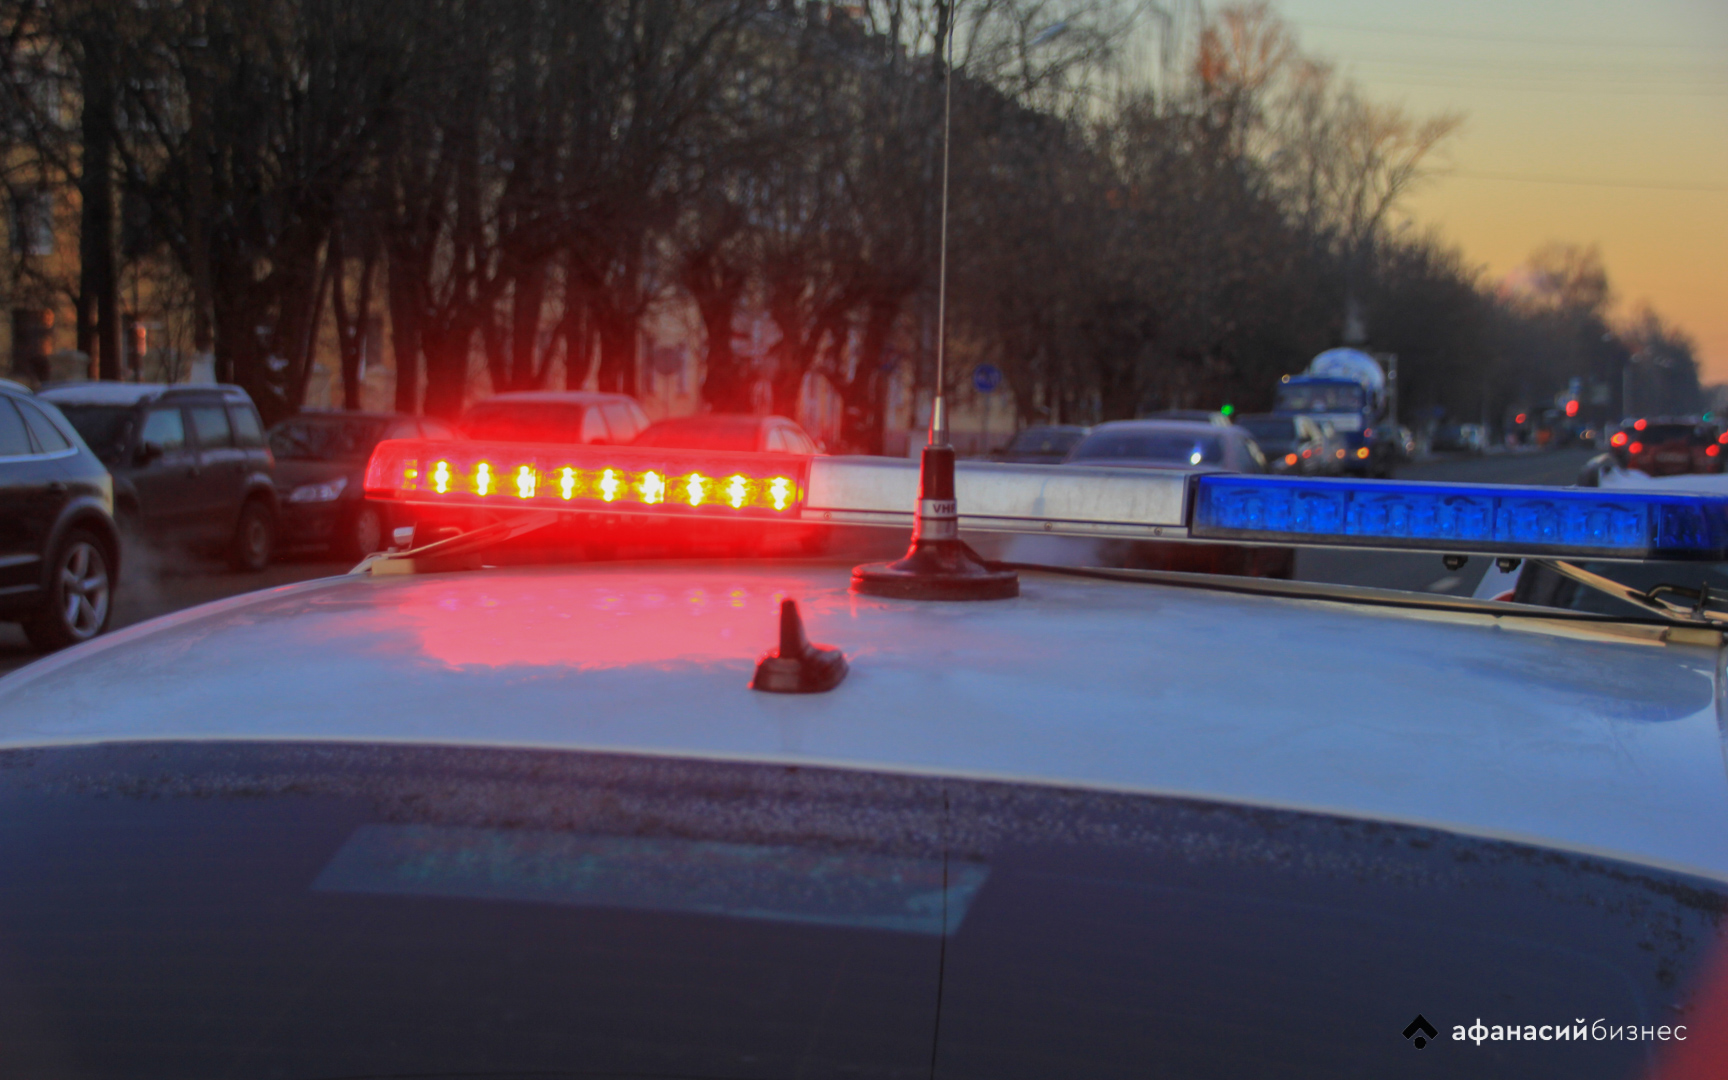 Два человека пострадали в столкновении Mercedes и Лады в Тверской обалсти